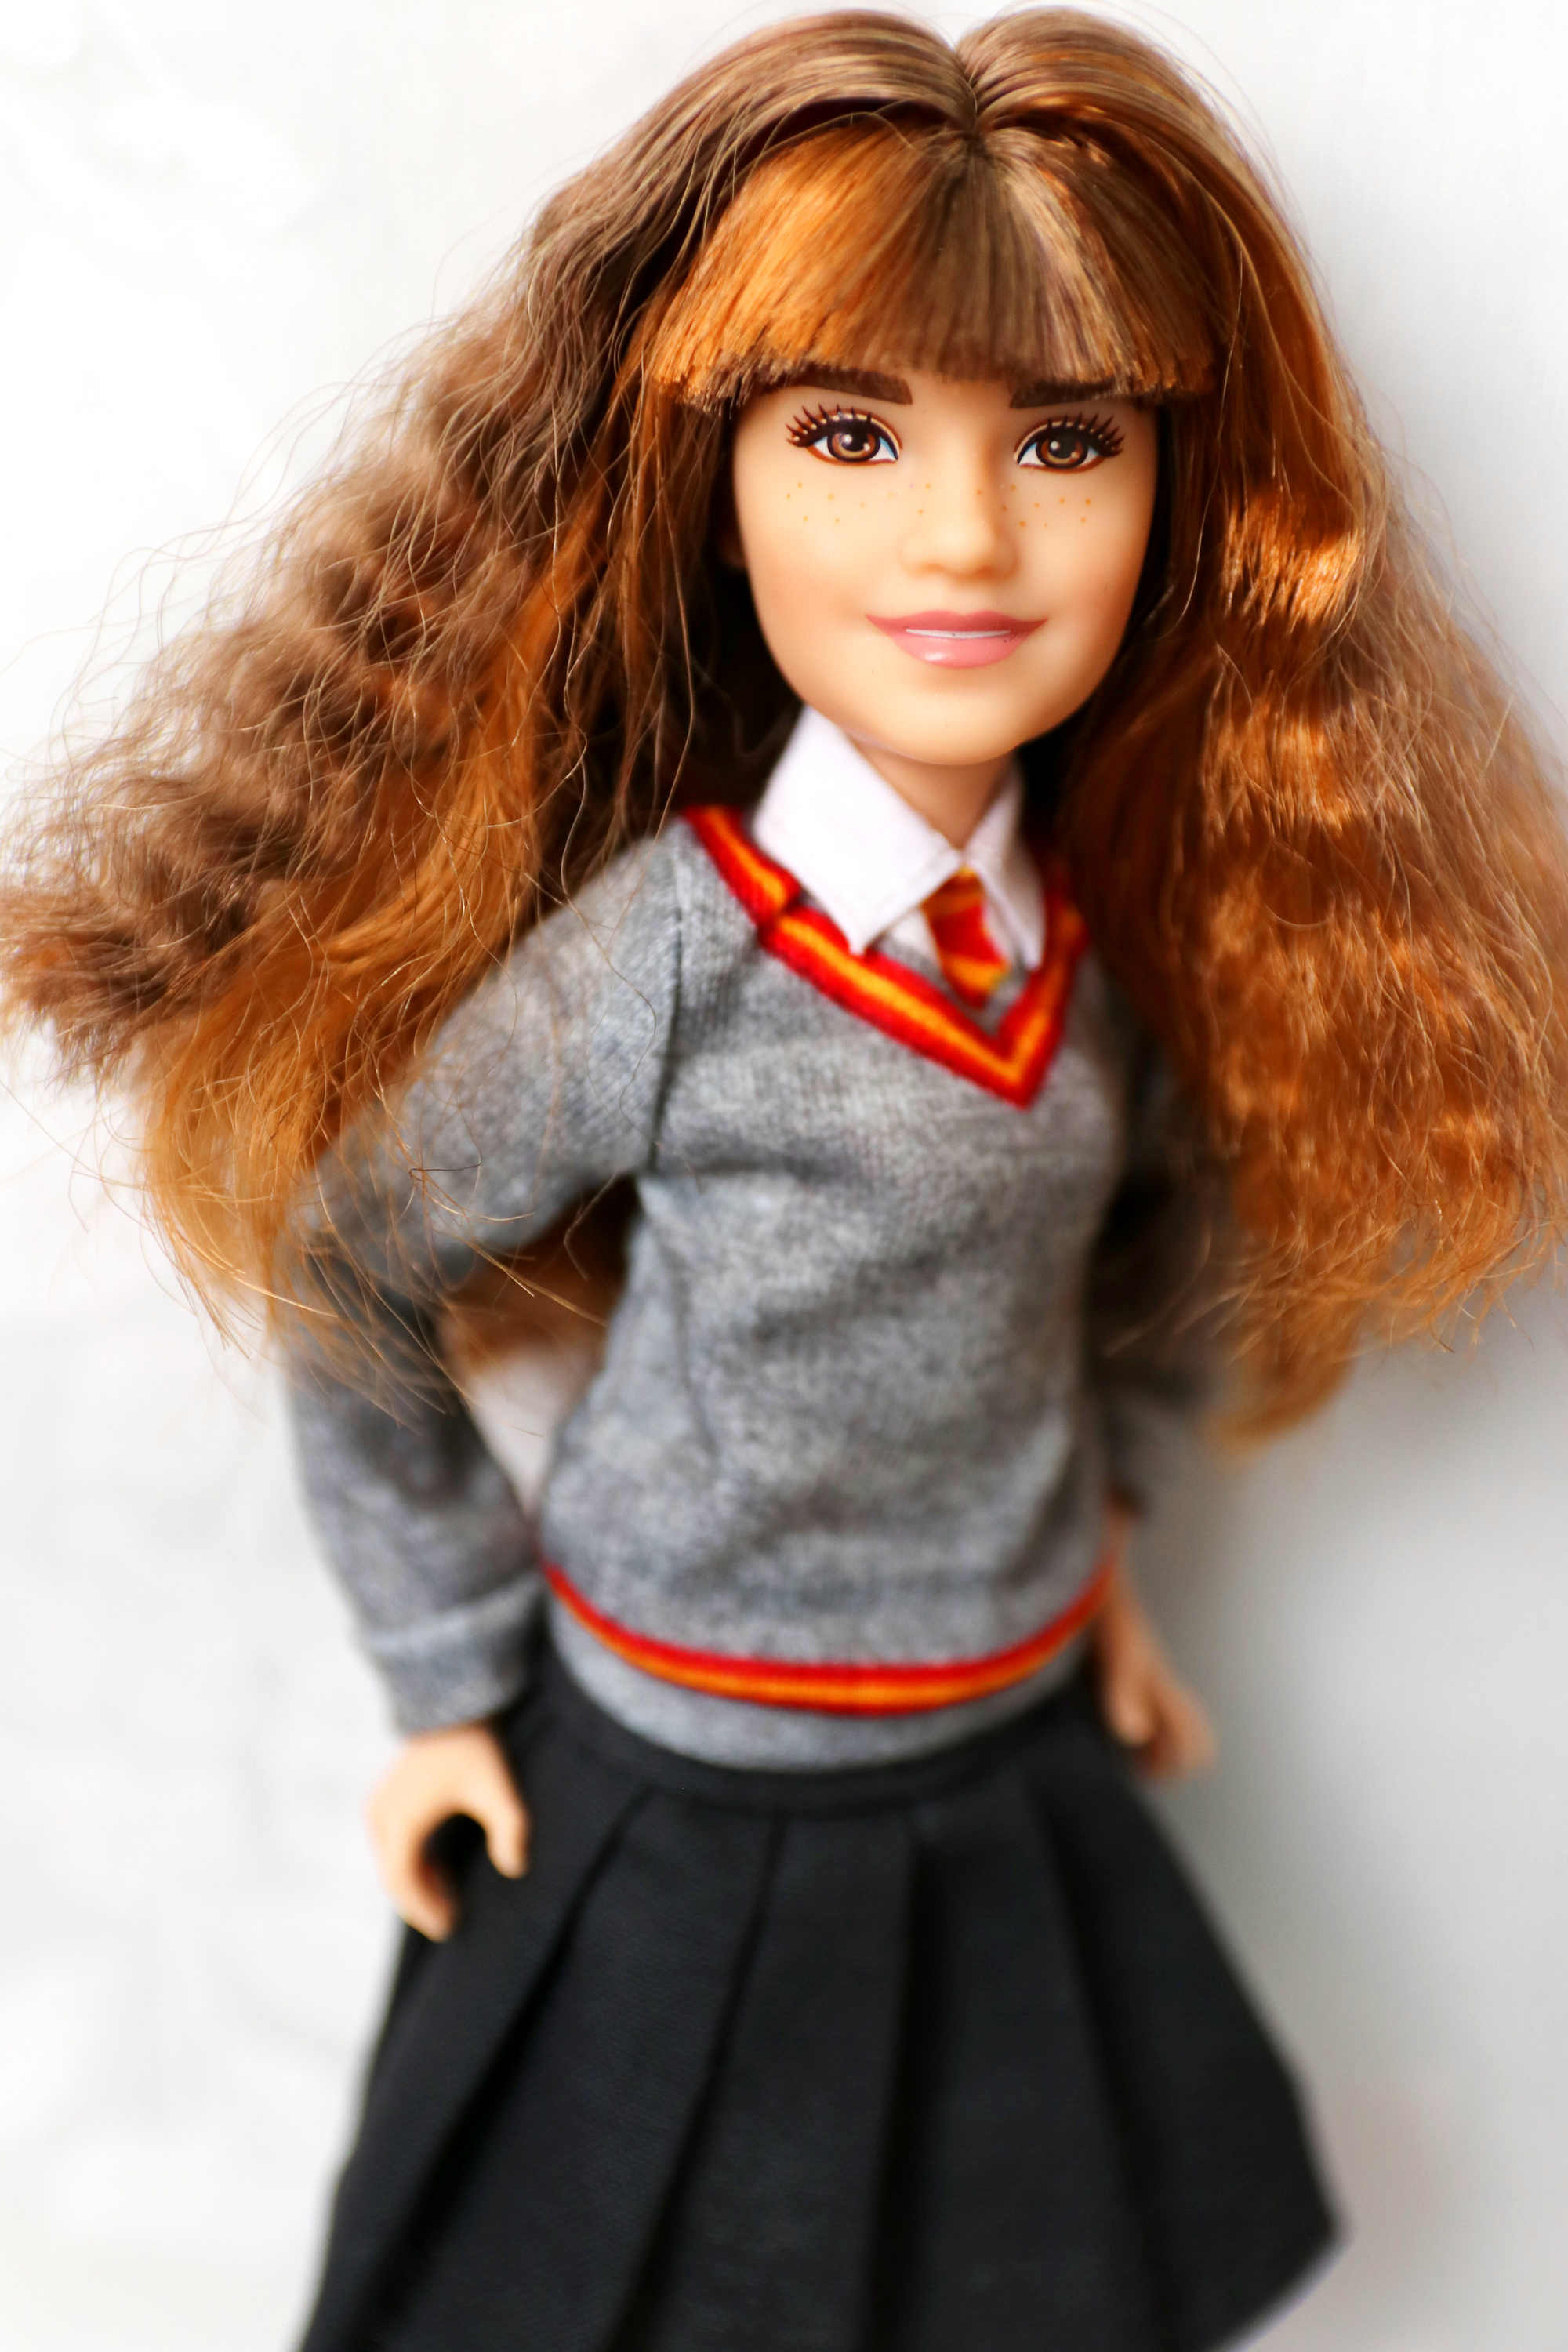 hermione barbie